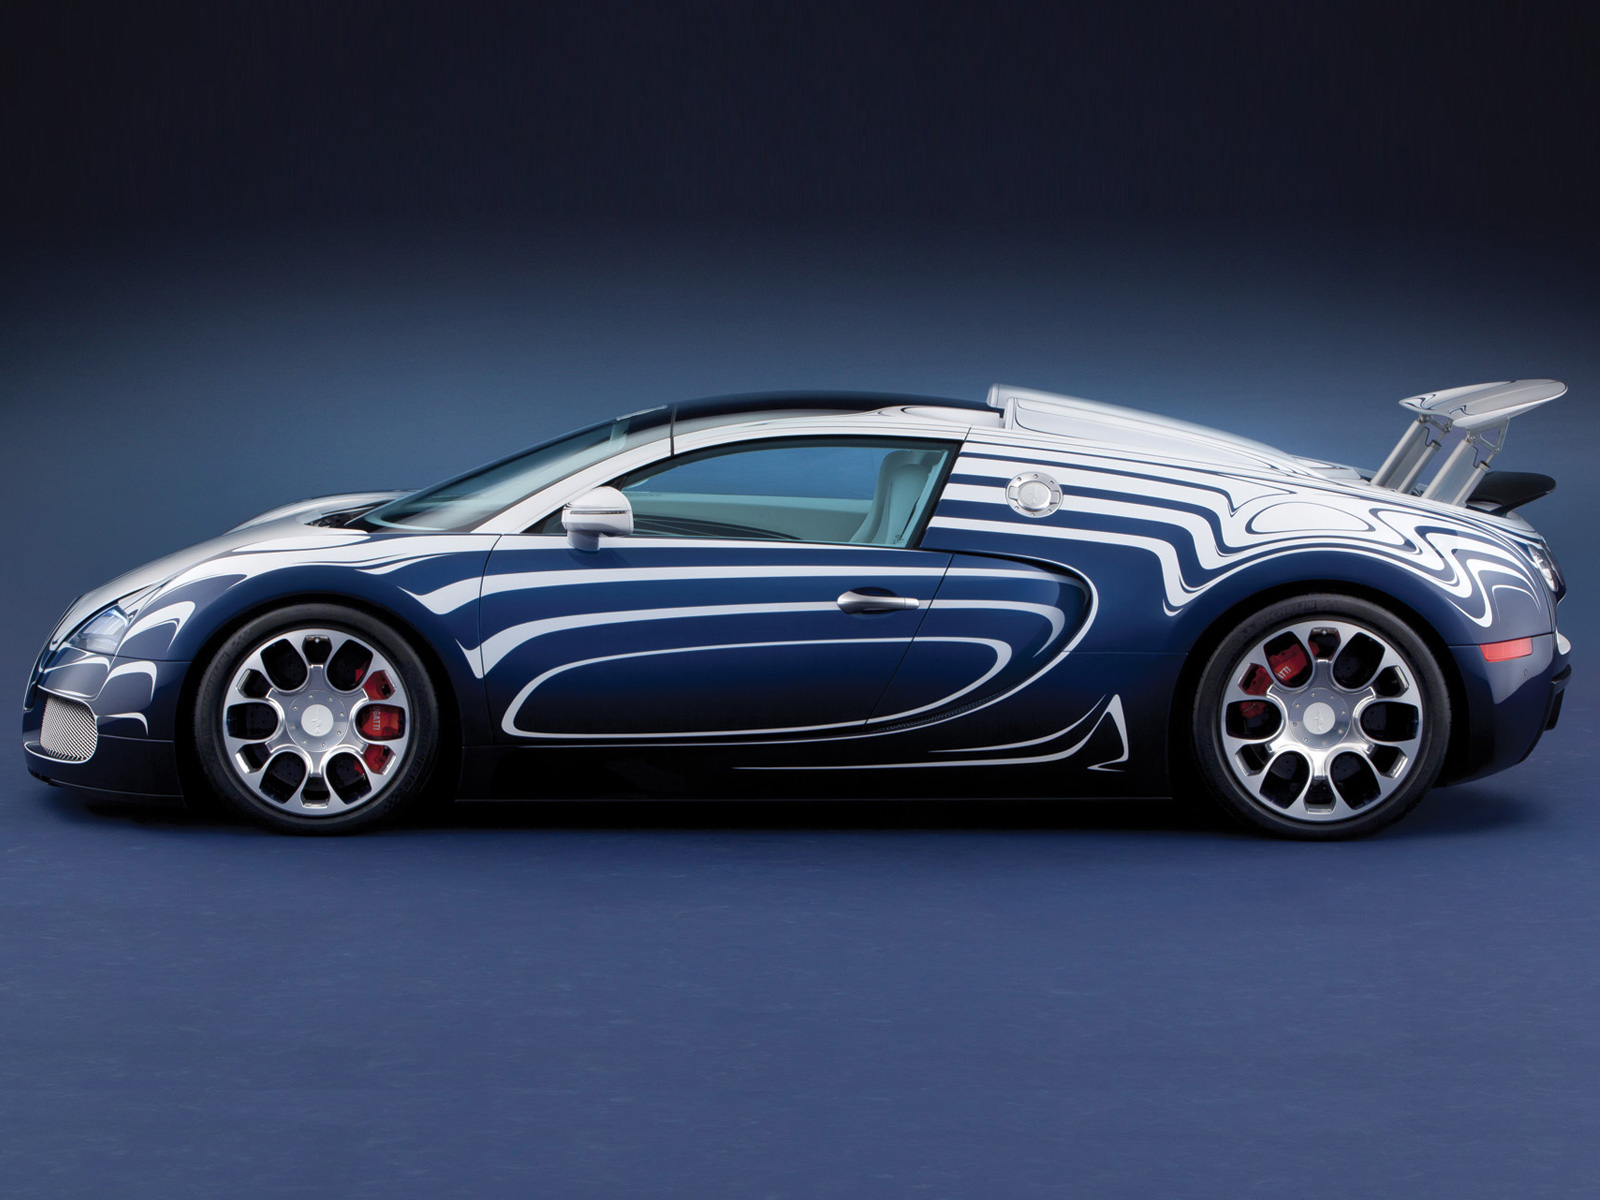 2011 Bugatti Veyron Grand Sport LOr Blanc   Auto Cars Concept